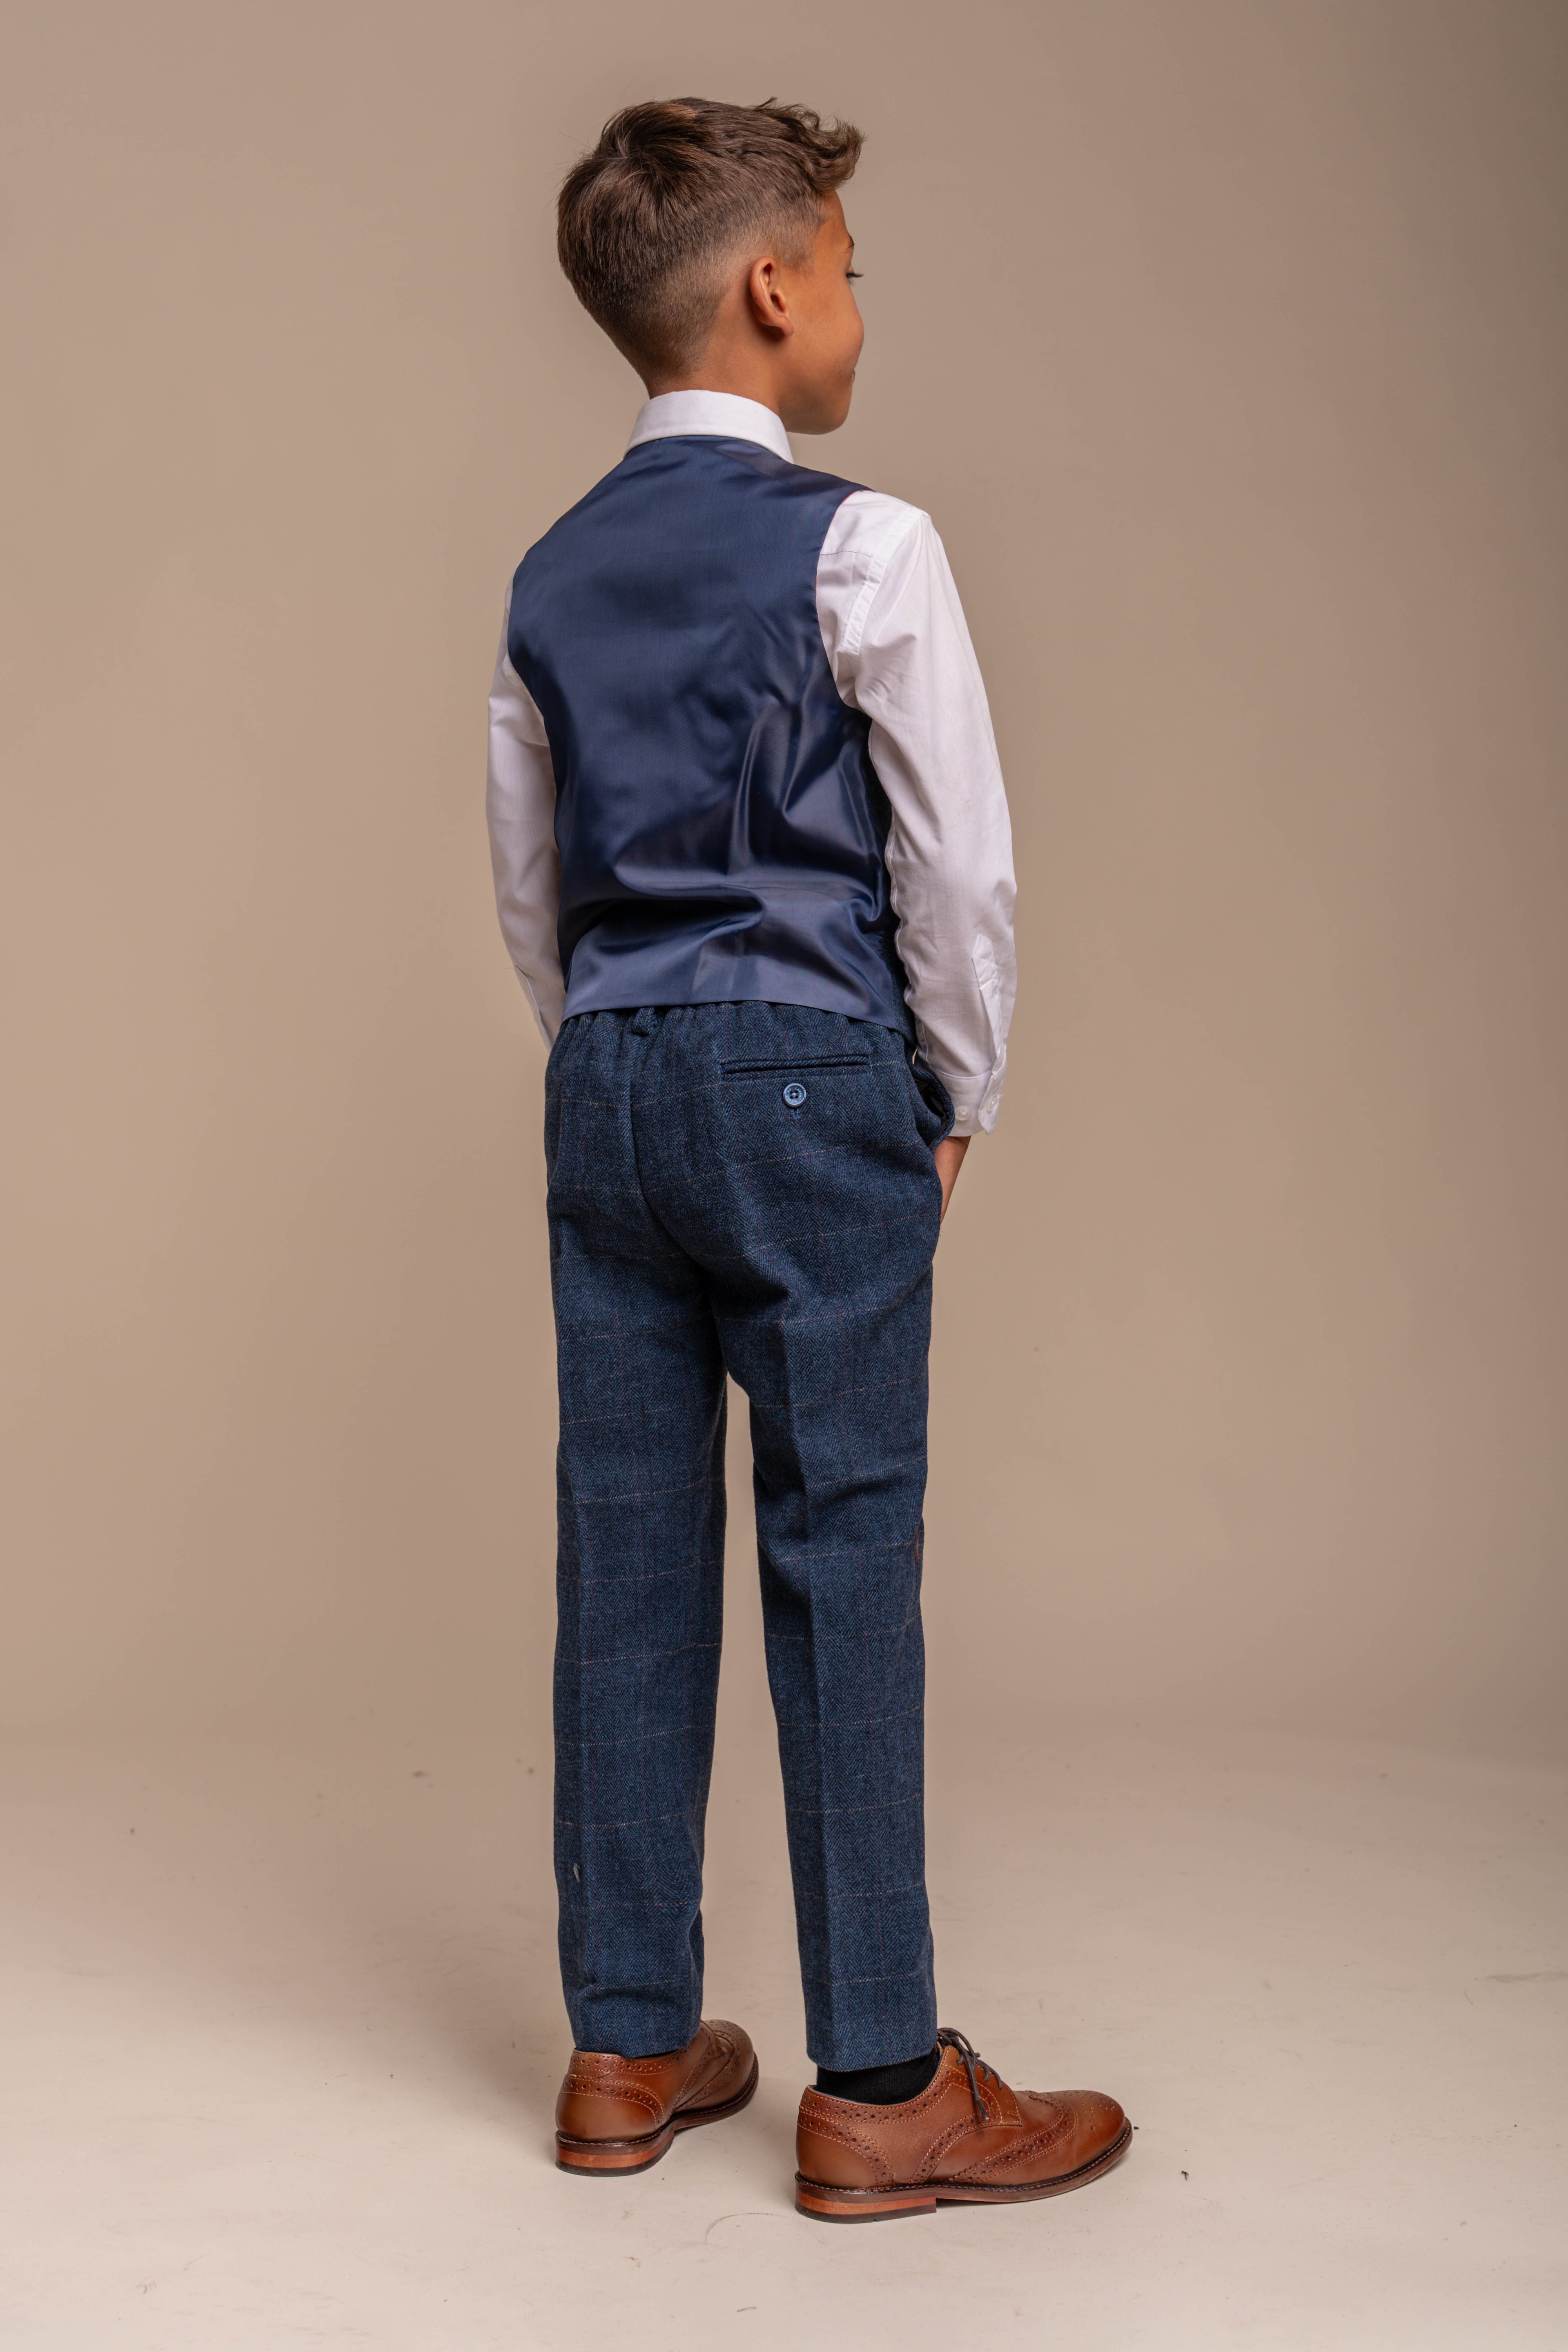 Boys Slim Fit Herringbone Tweed Blue Suit - CARNEGI - Navy Blue